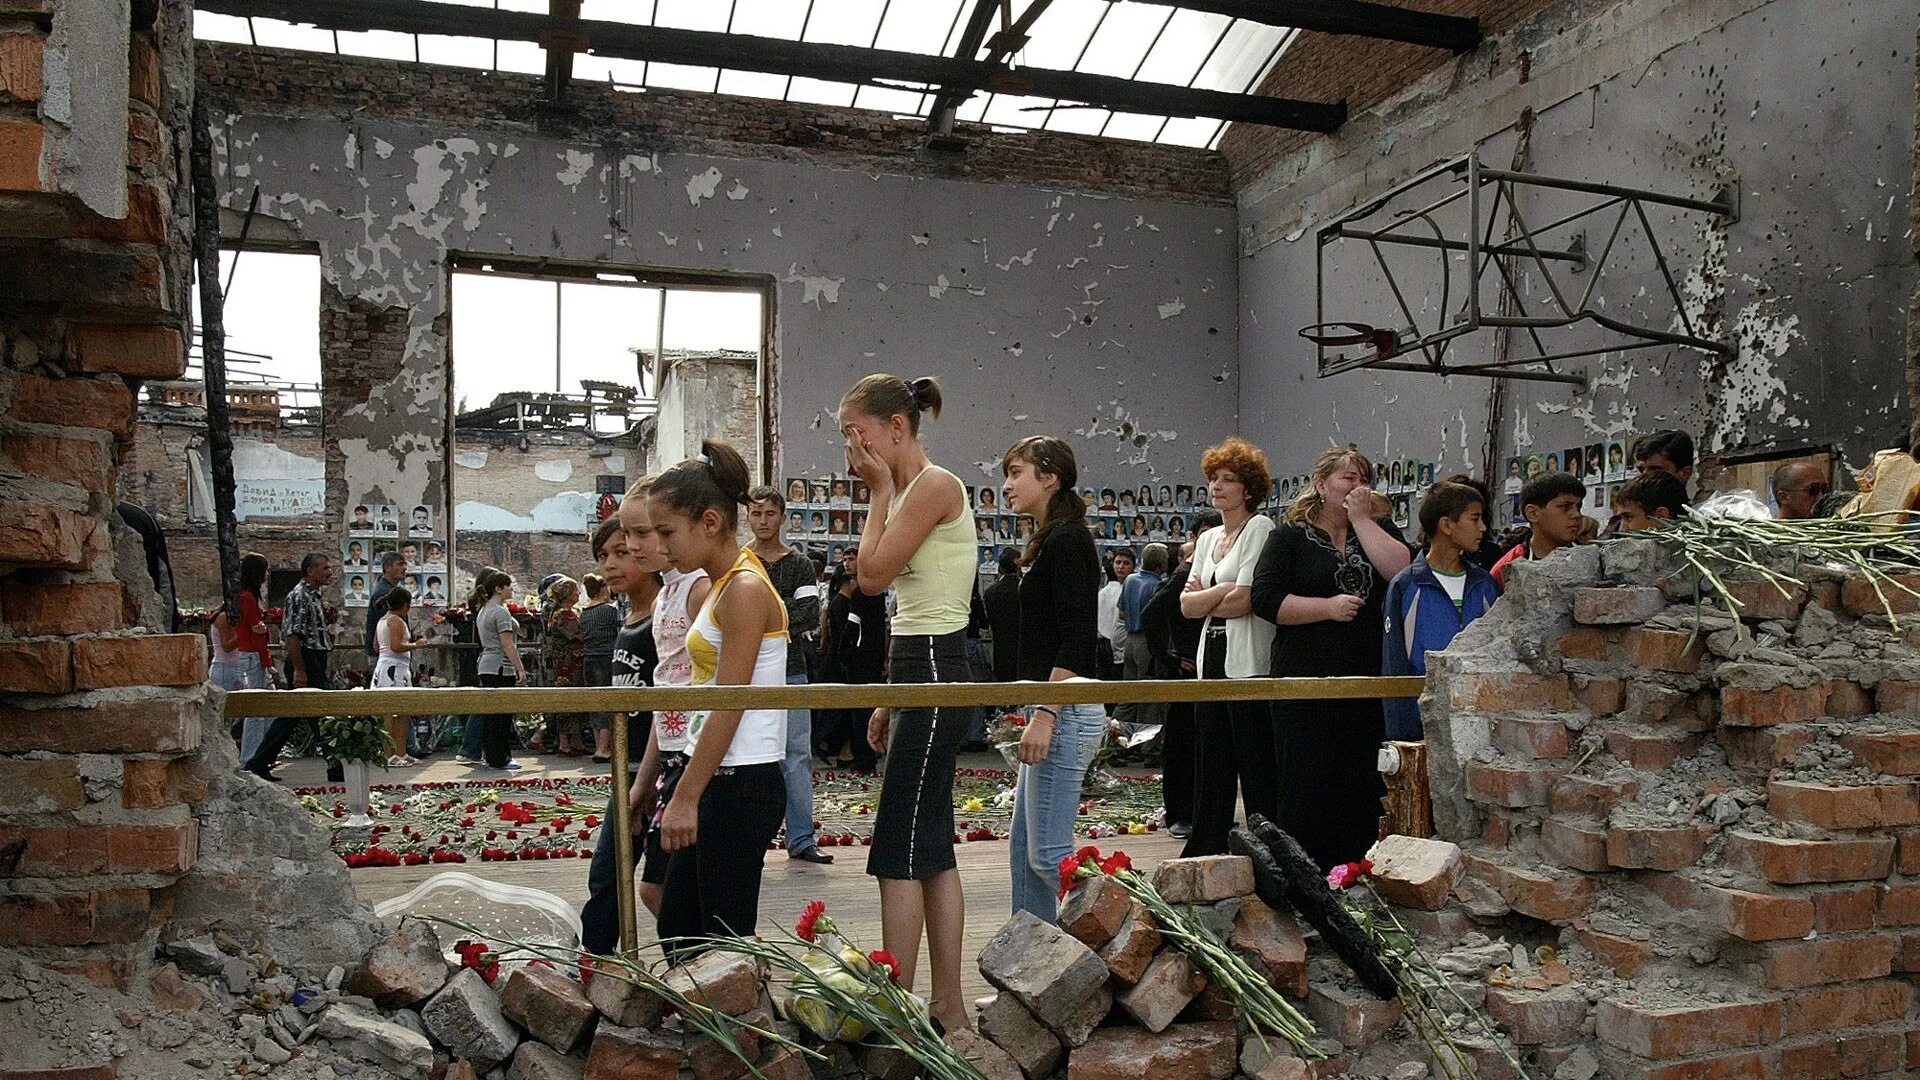 Что произошло в этот день в мире. Трагедия в Беслане 3 сентября 2004. Беслан трагедия 1 сентября. Беслан 1 сентября 2004 теракт в школе.